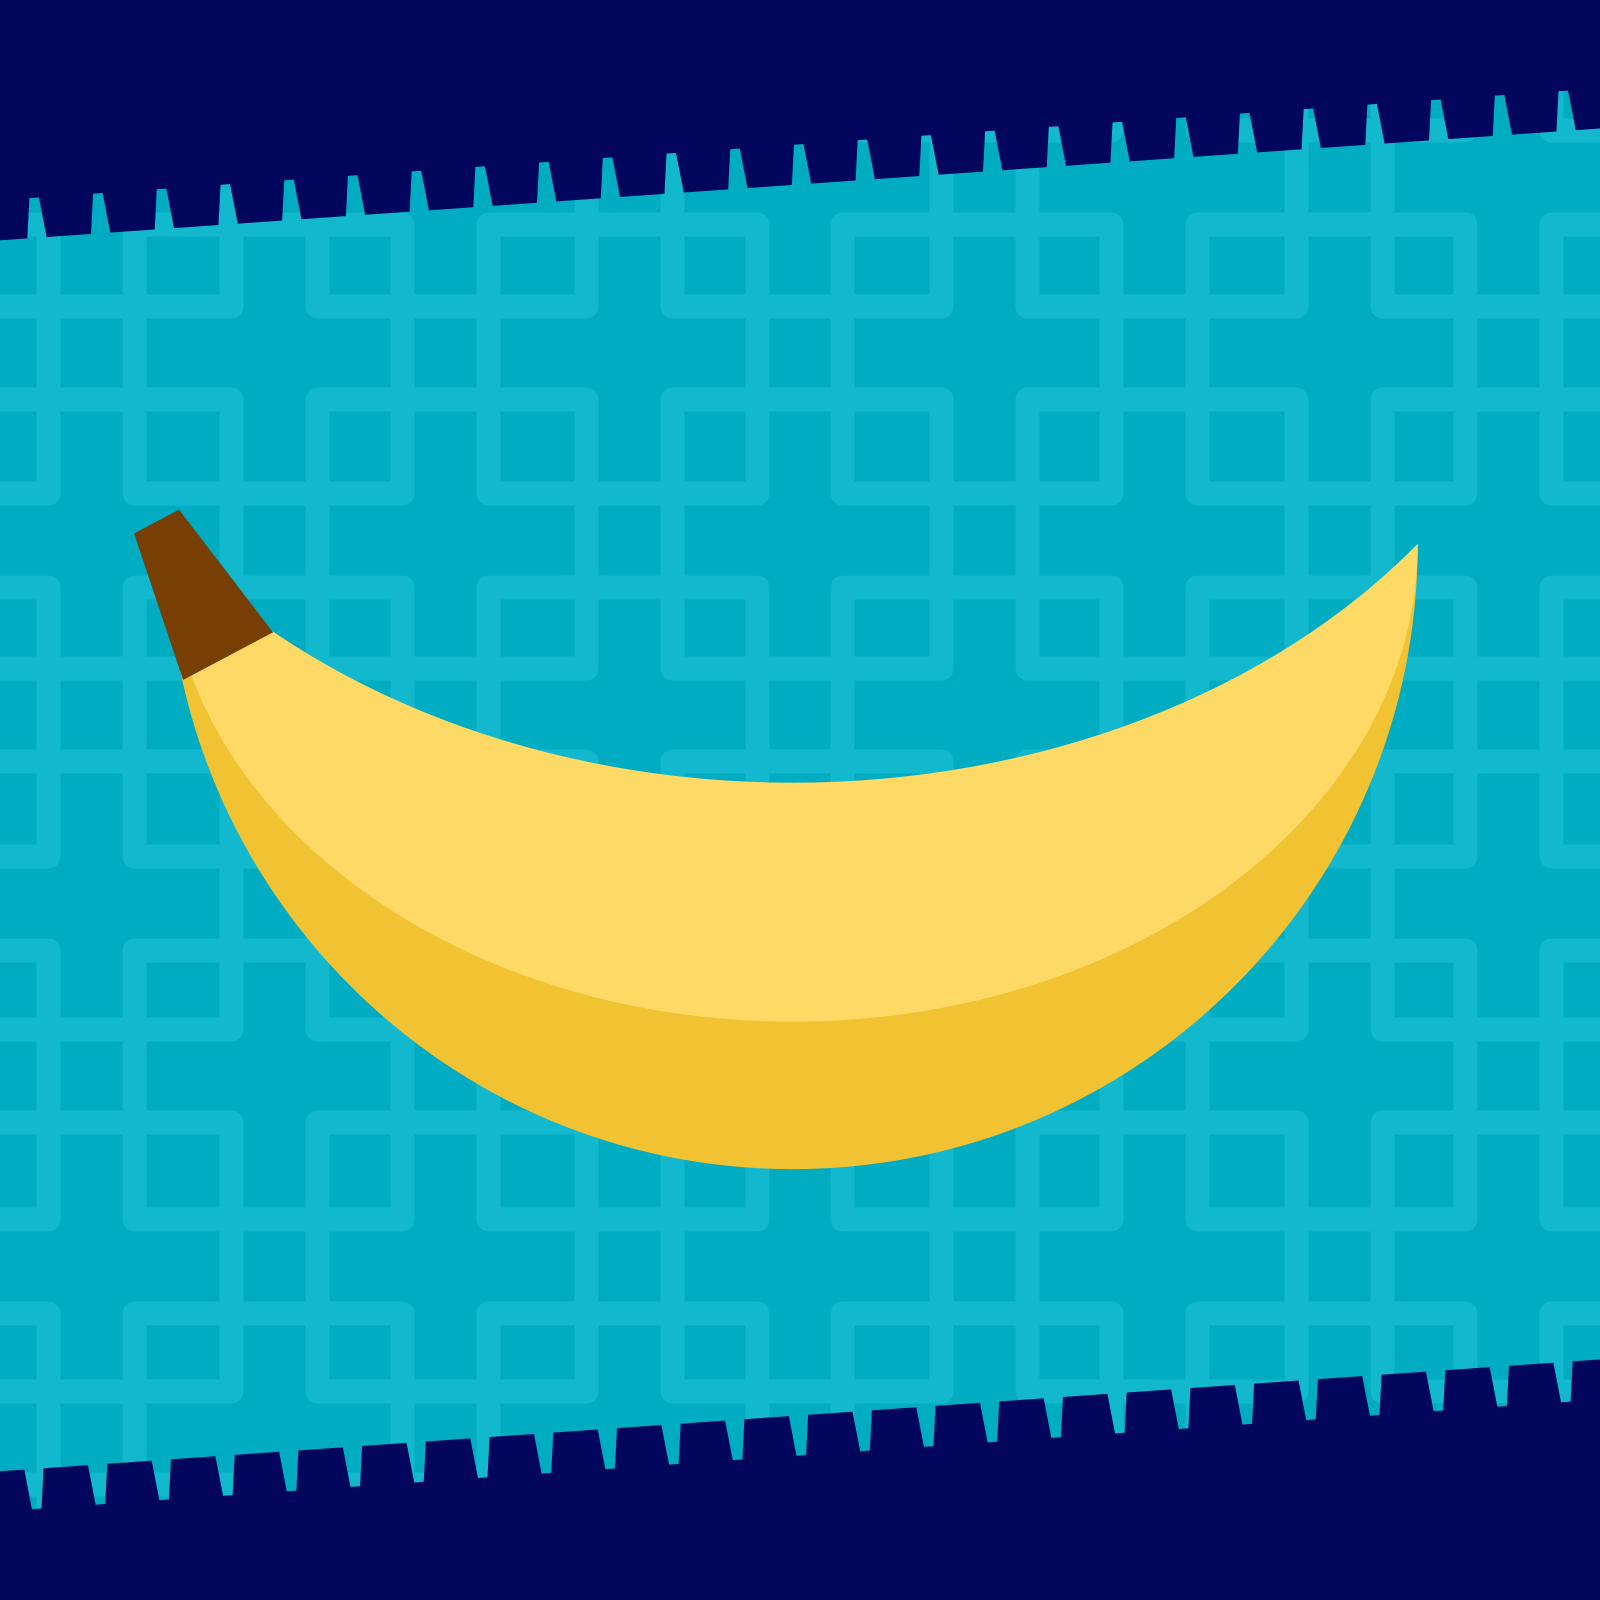 Drawing of a banana